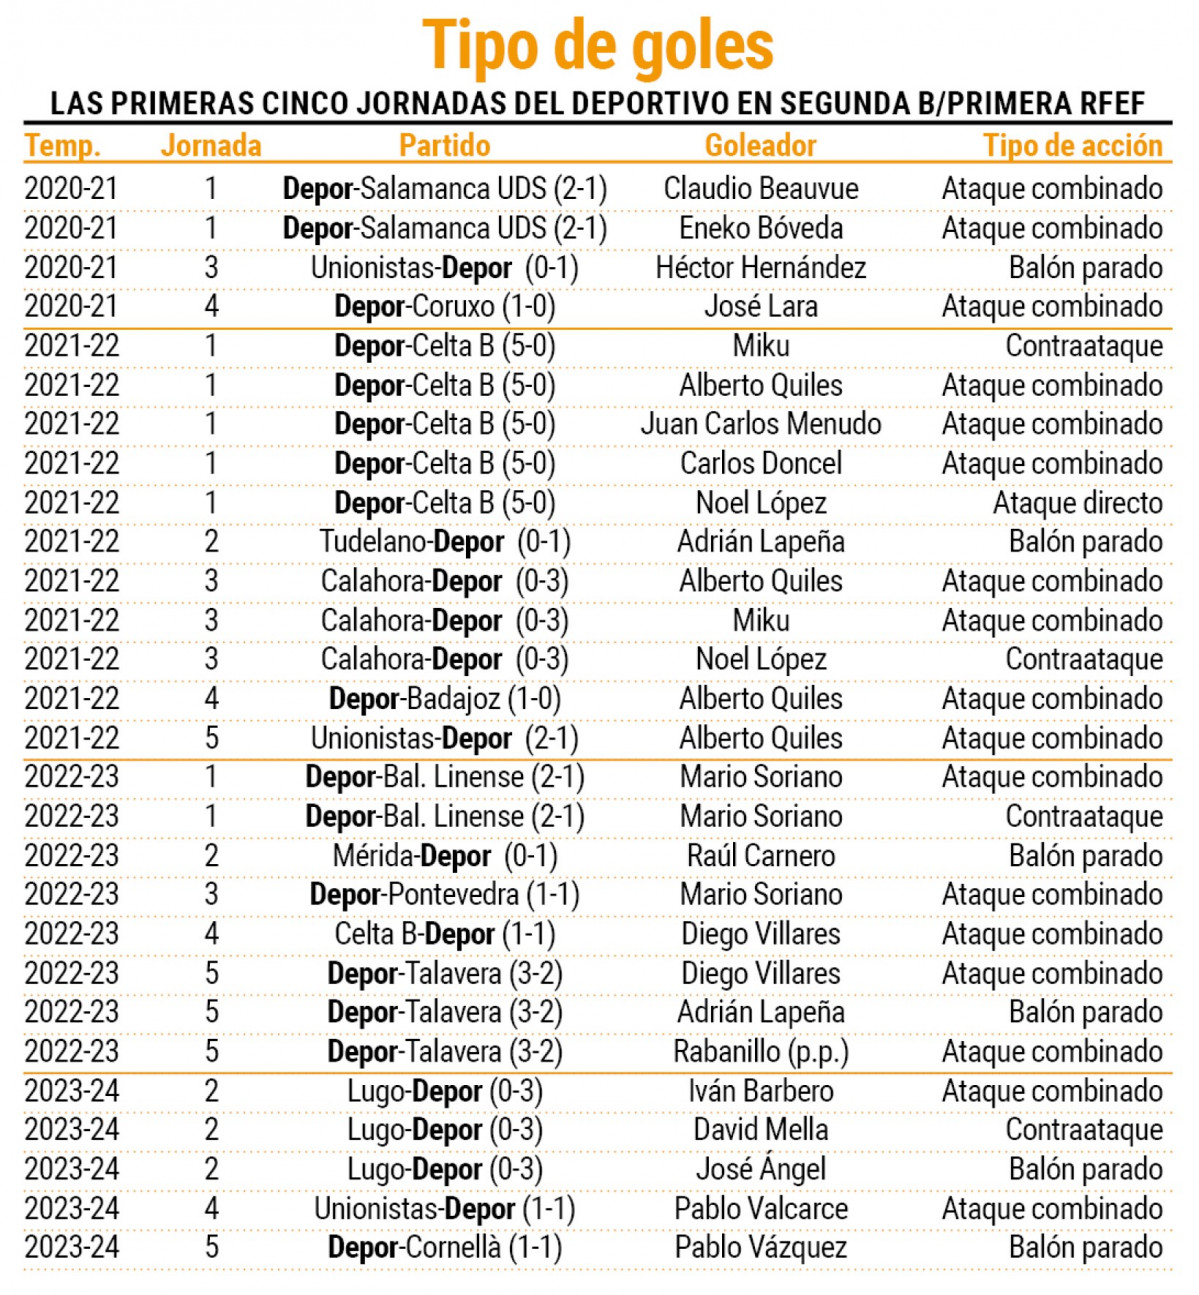 Tipos de goles del Depor en las primeras cinco jornadas en Primera RFEF y Segunda B